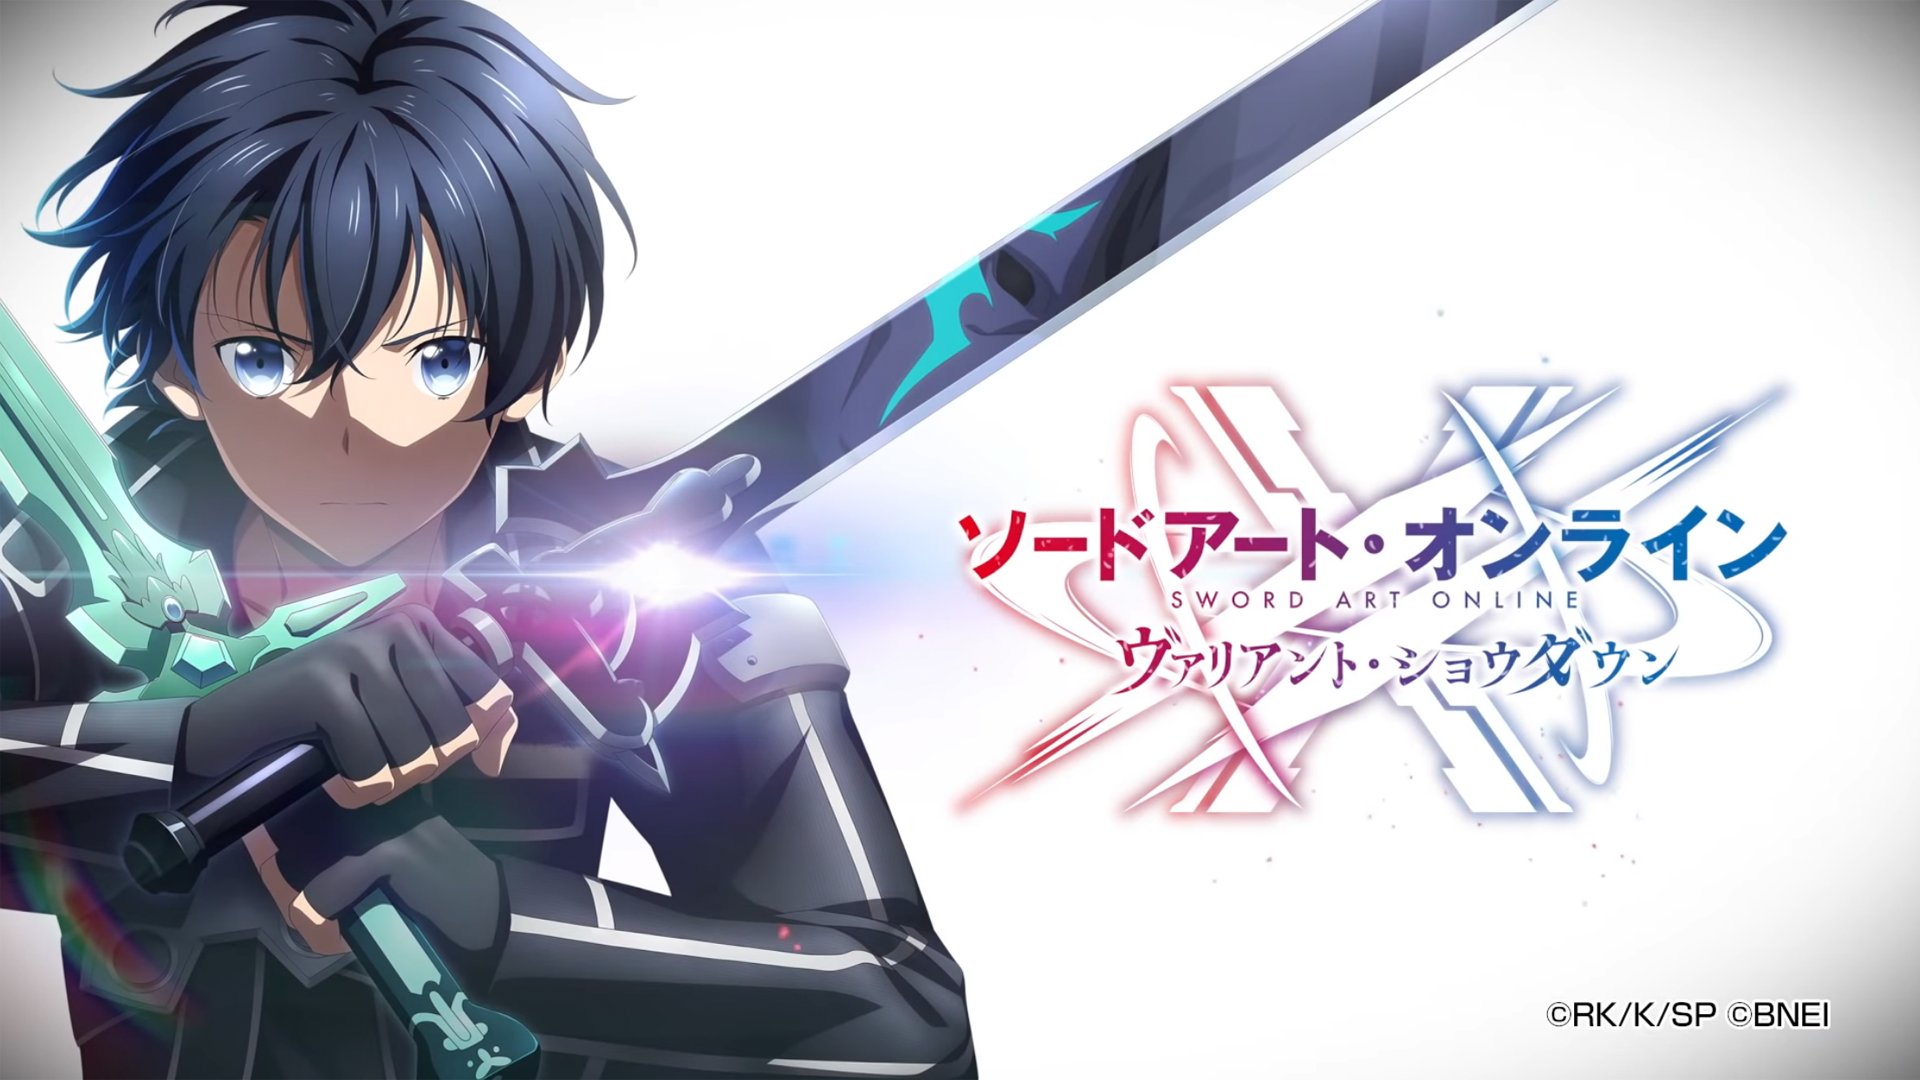 Sword Art Online: Siêu phẩm anime về thế giới ảo sẽ khiến bạn thuộc vào một cuộc phiêu lưu đích thực cùng Kirito và những đồng đội trên đường đánh bại thế giới ảo SAO. Hãy xem ảnh liên quan để khám phá tuyệt phẩm này!